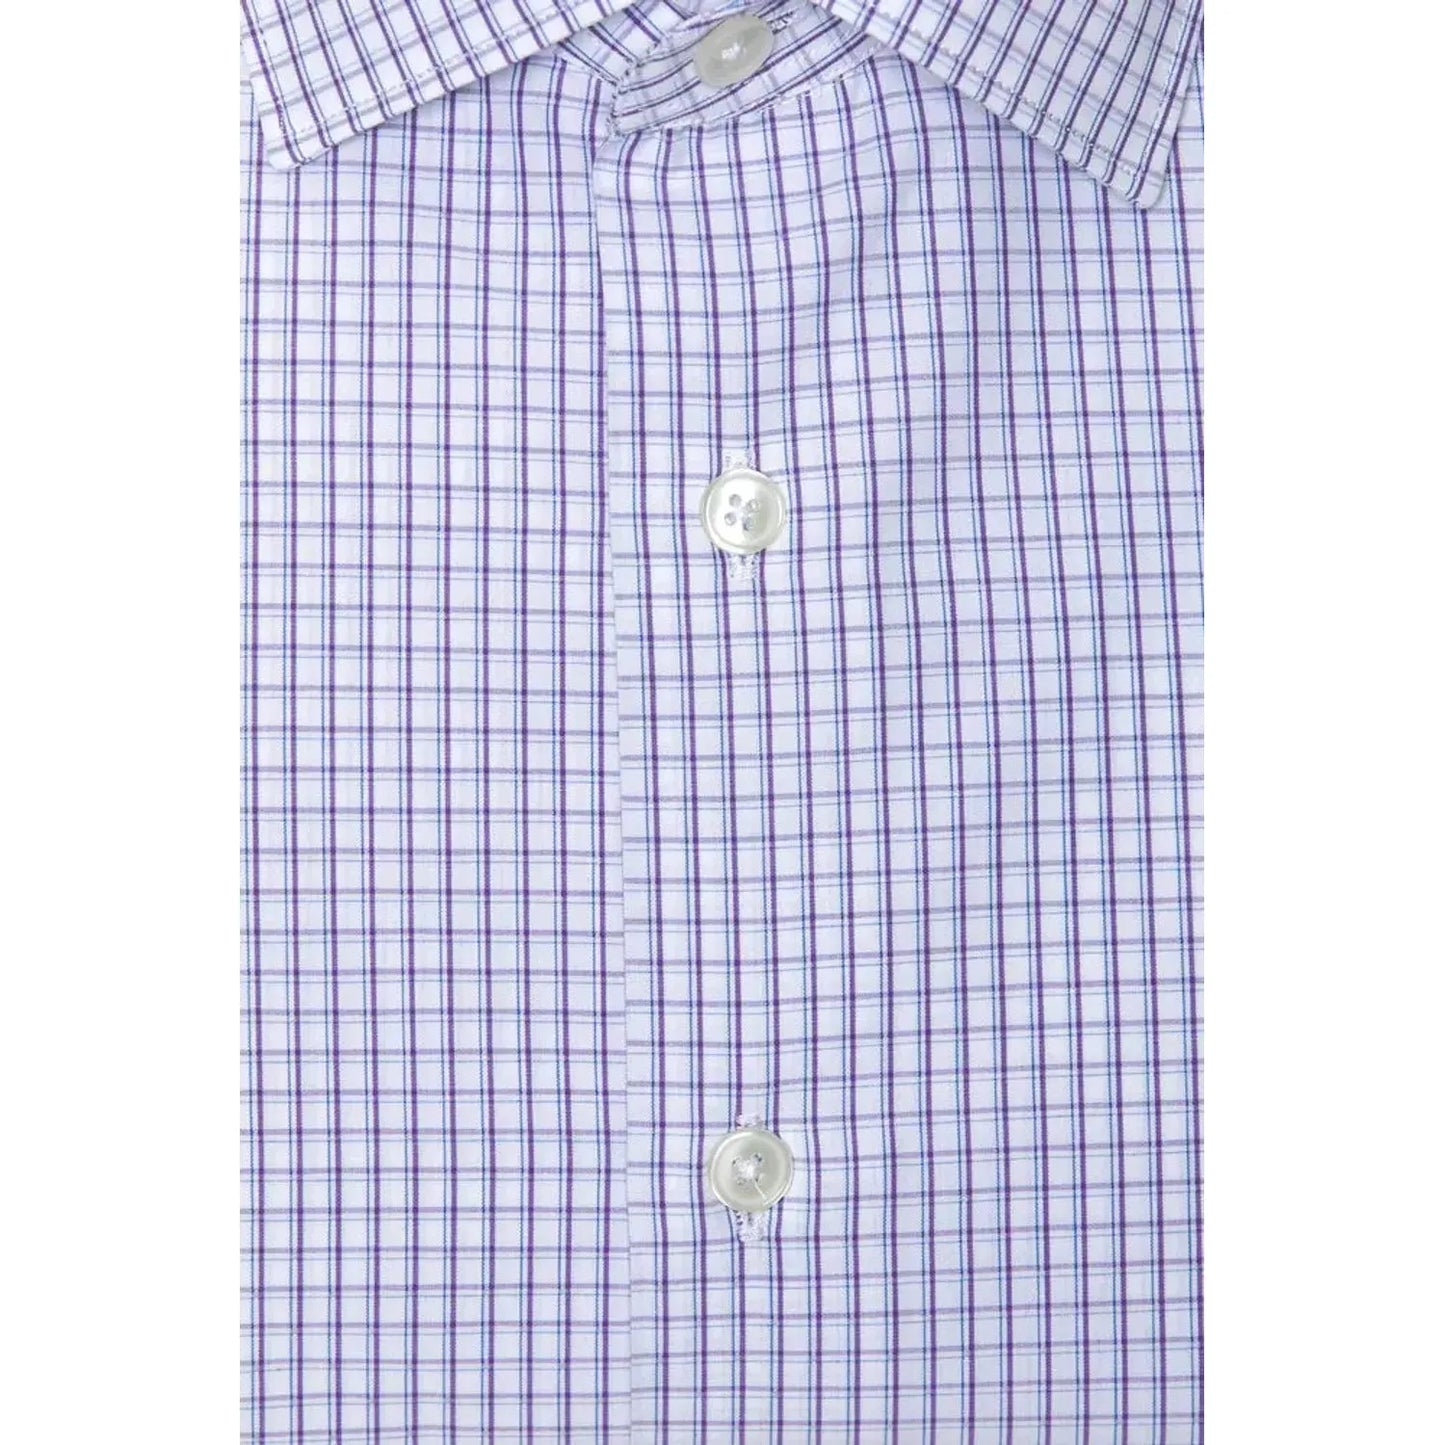 Robert Friedman Elegant Burgundy Cotton Slim Shirt burgundy-cotton-shirt-3